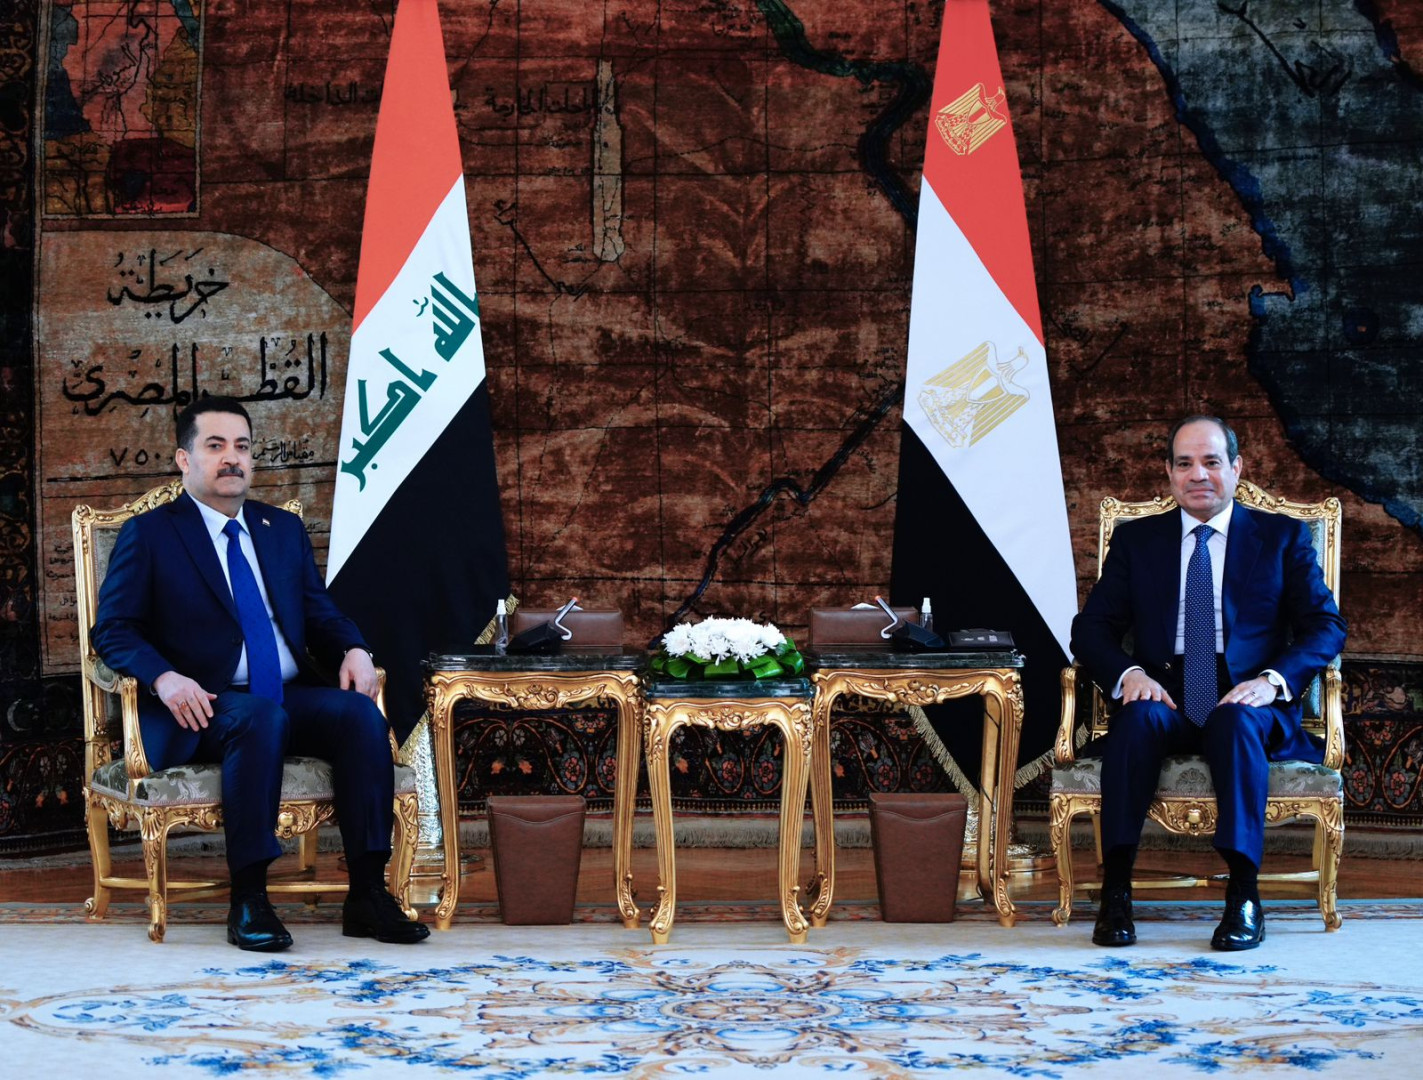 السيسي يبلغ السوداني رغبة مصر في "شراكة طويلة الامد" مع العراق